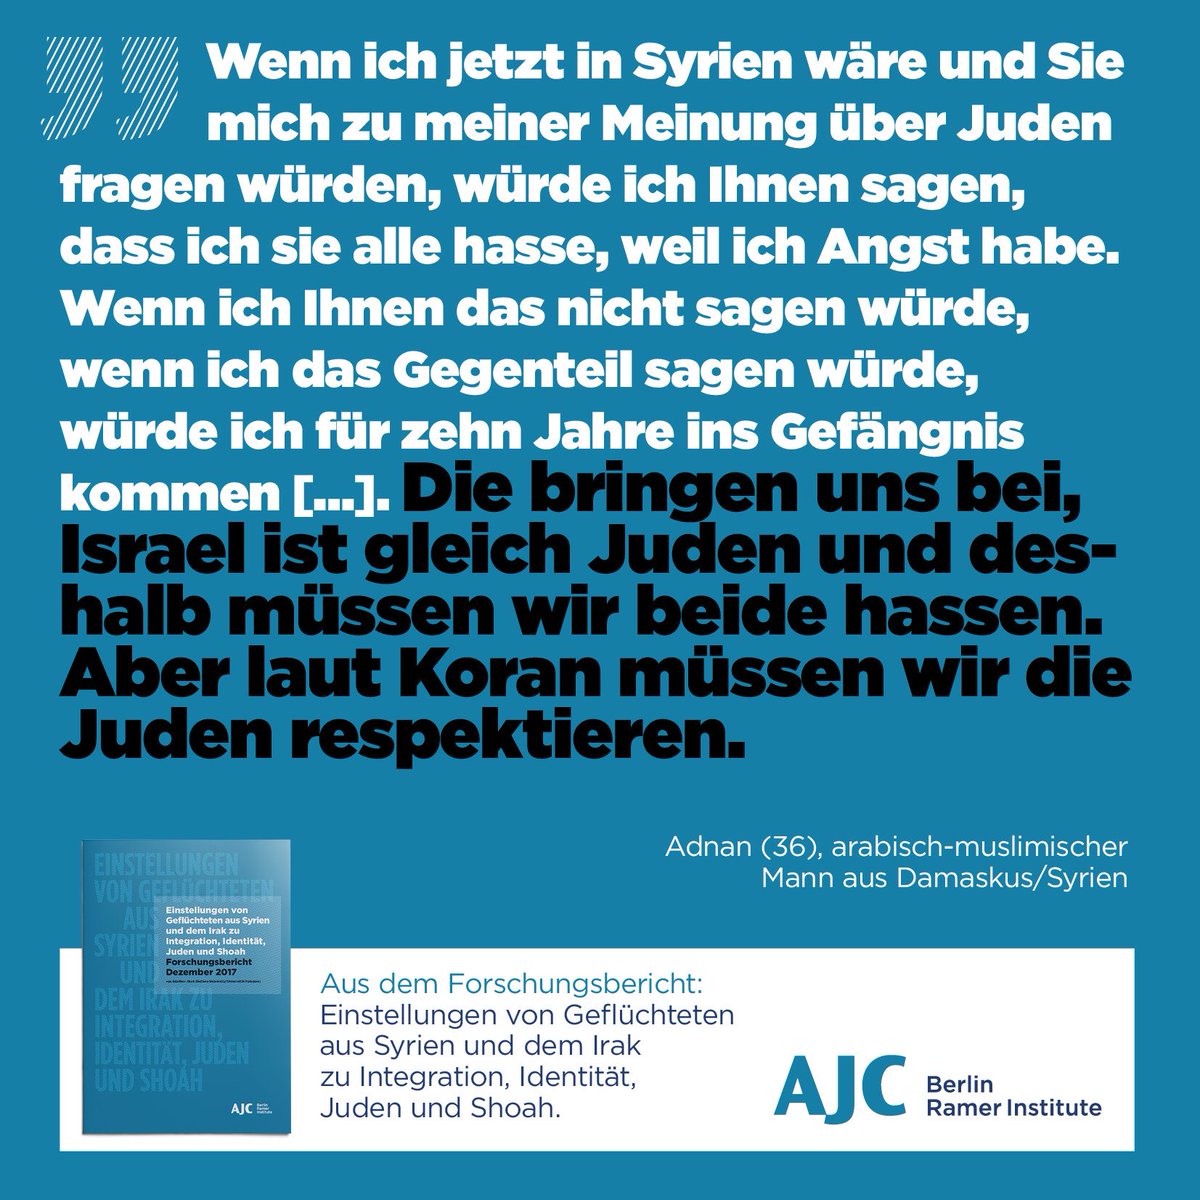 AJC Berlin Ø¹Ù„Ù‰ ØªÙˆÙŠØªØ± "Israelhass und Antisemitismus sind Staatsdoktrin in Syrien Das bestätigen viele Aussagen in unserer Stu